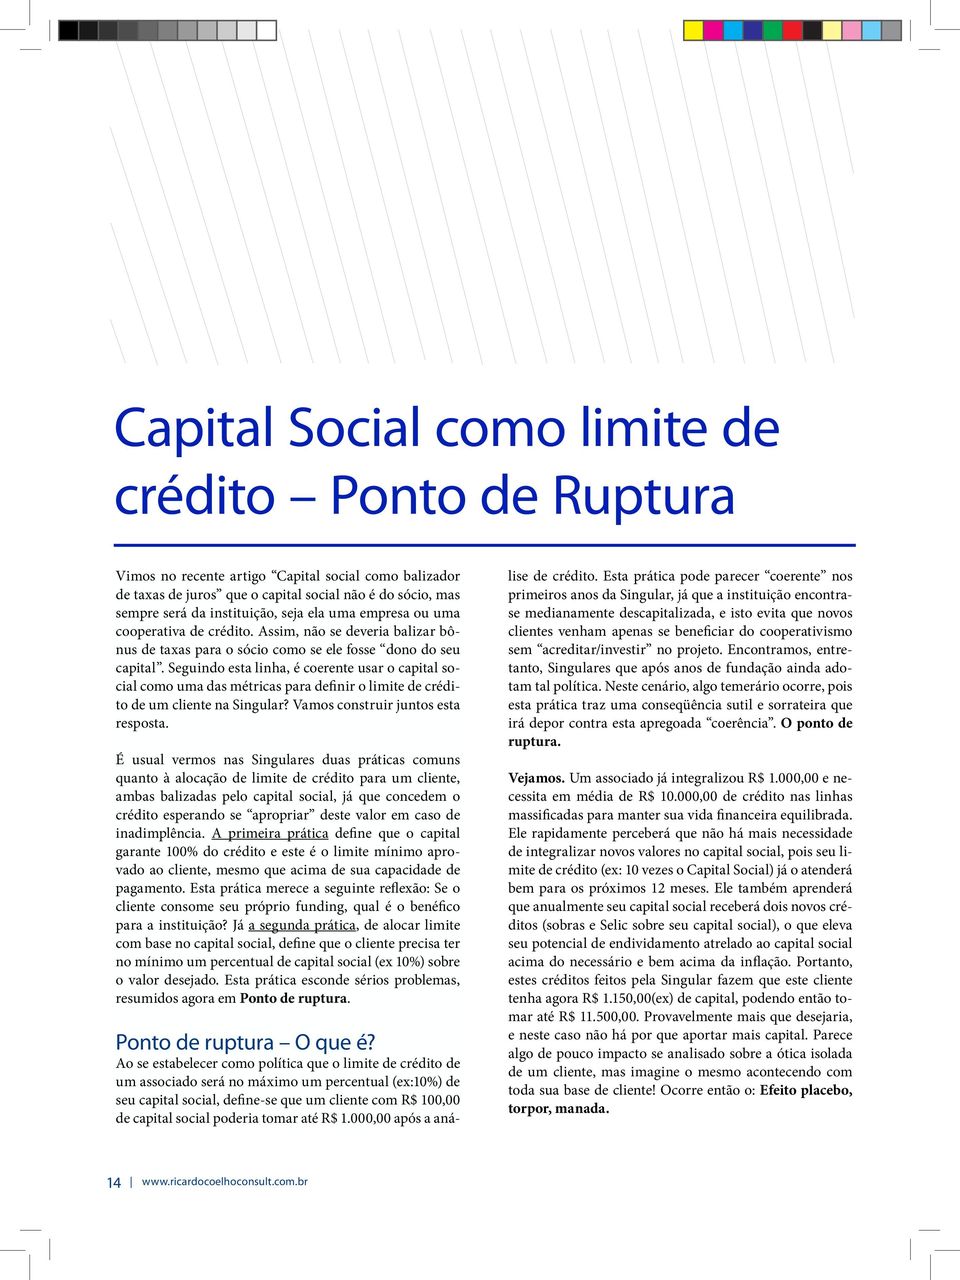 Seguindo esta linha, é coerente usar o capital social como uma das métricas para definir o limite de crédito de um cliente na Singular? Vamos construir juntos esta resposta.